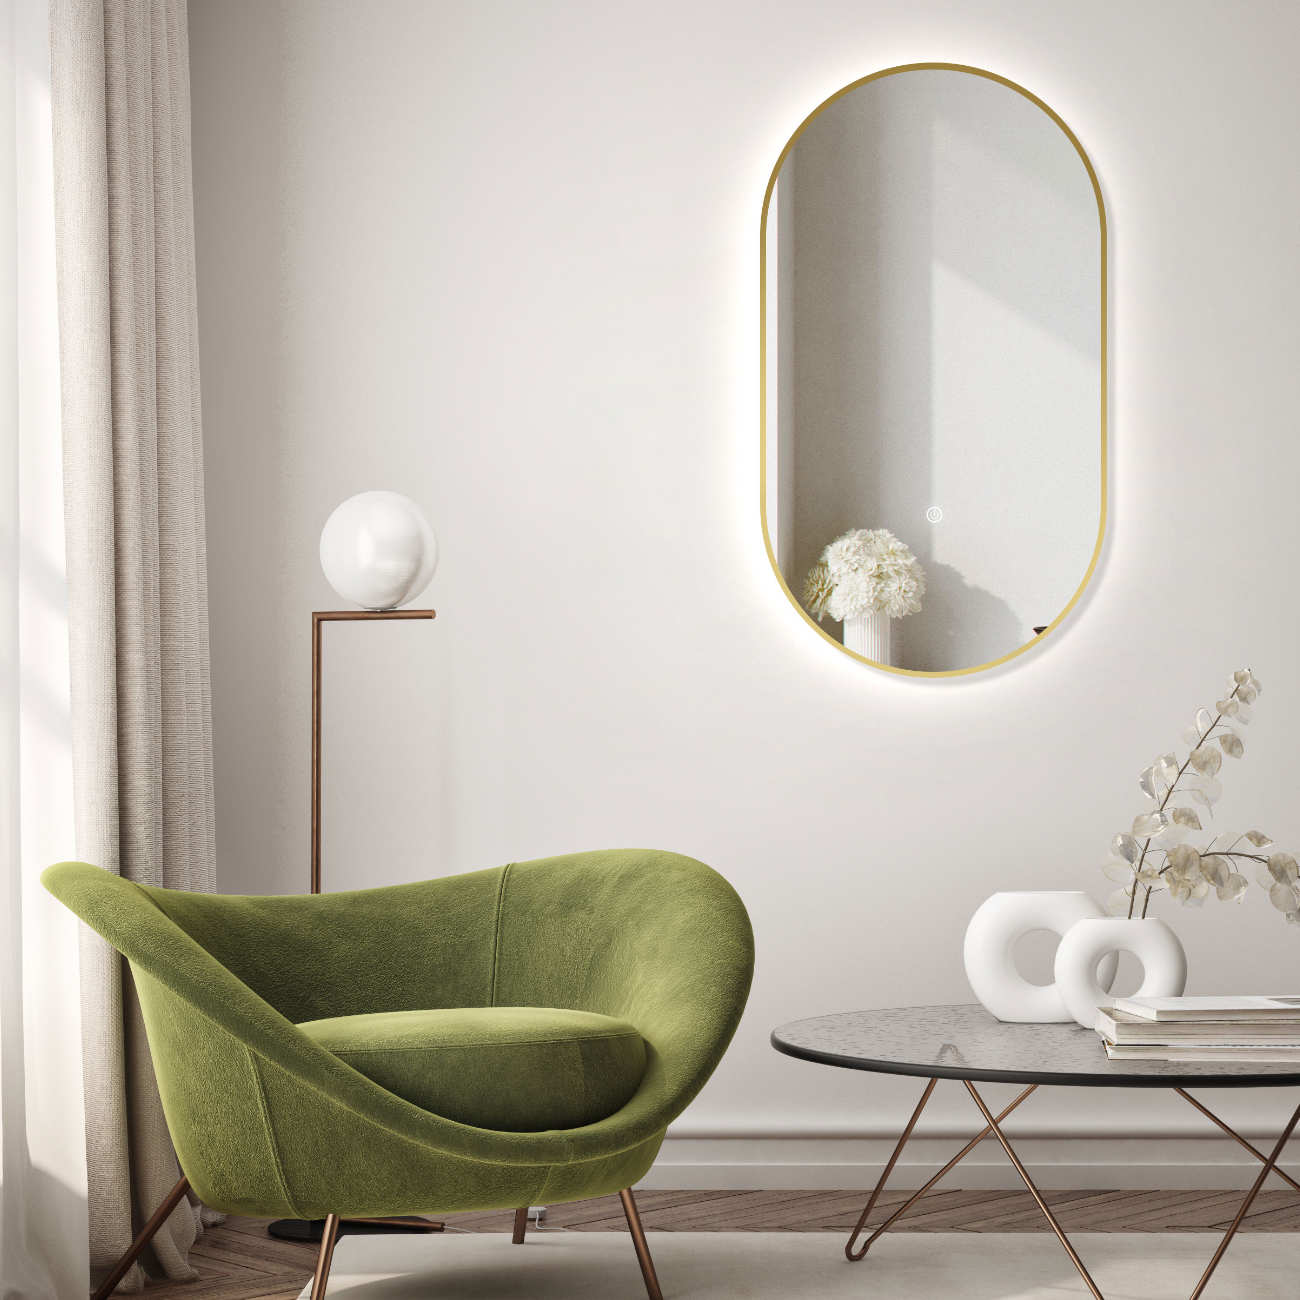 LED Badspiegel, design oval Dekor Spiegel, Badspiegel mit led Beleuchtung, Metall Rahmen